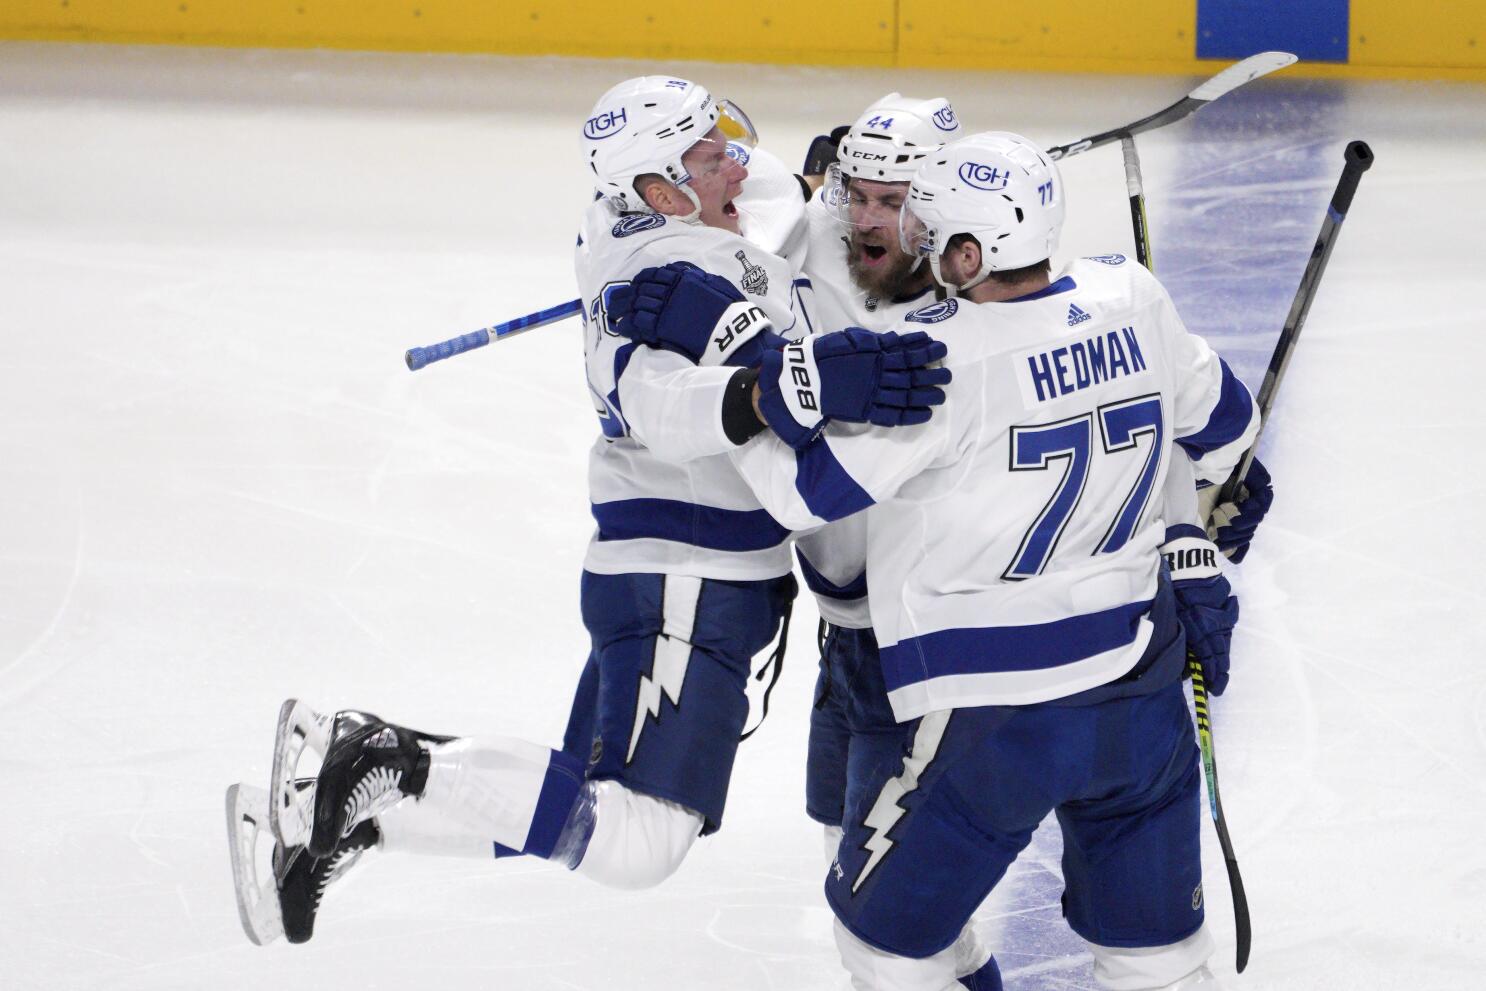 Hedman lifts Lightning over Bruins, ending Boston's 6-game win streak